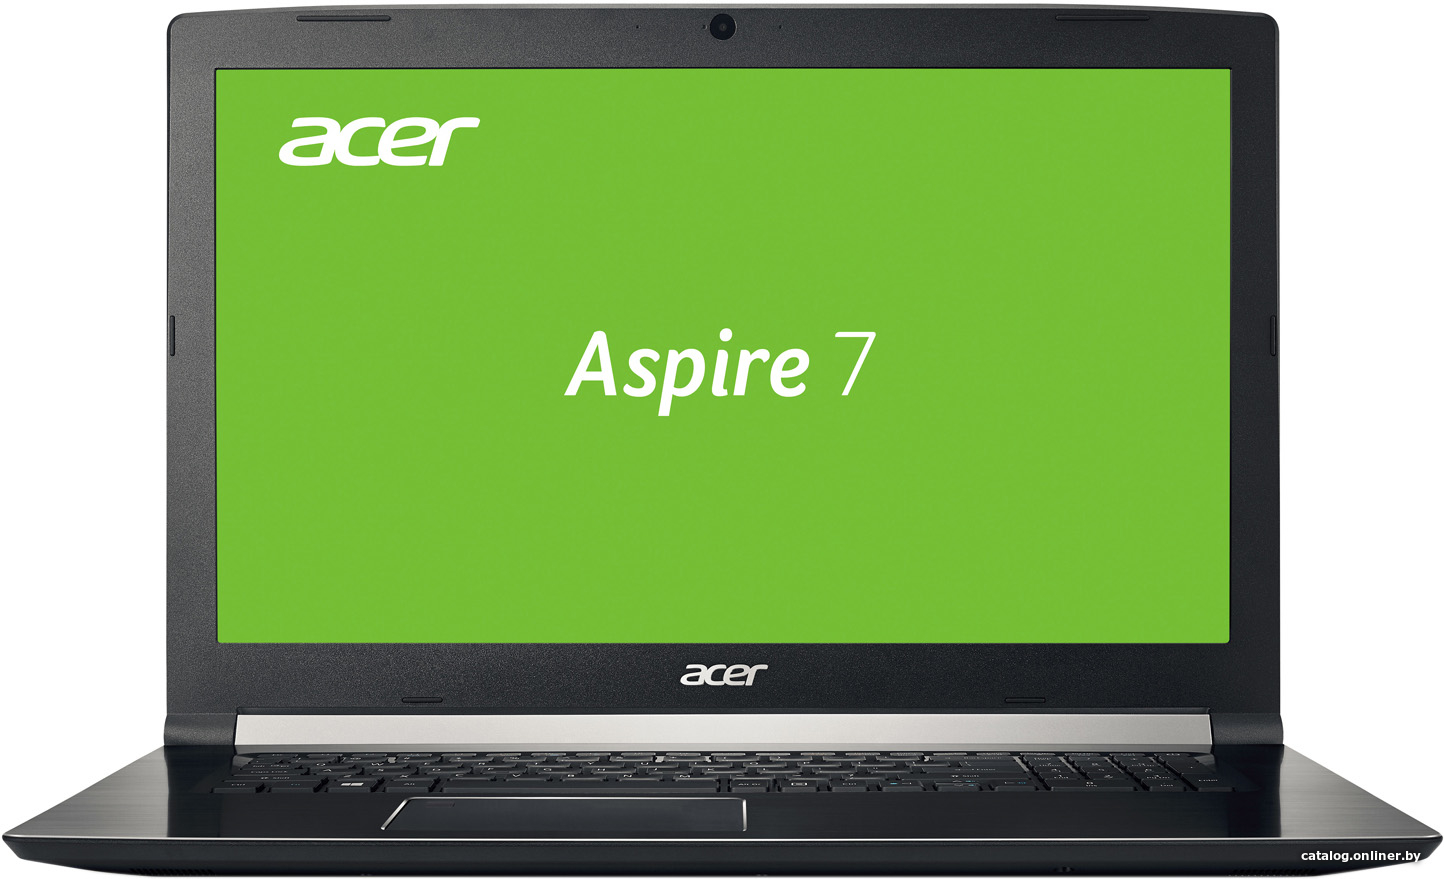 Замена южного моста Acer Aspire 7 A717-71G-57VK NX.GTVEP.001